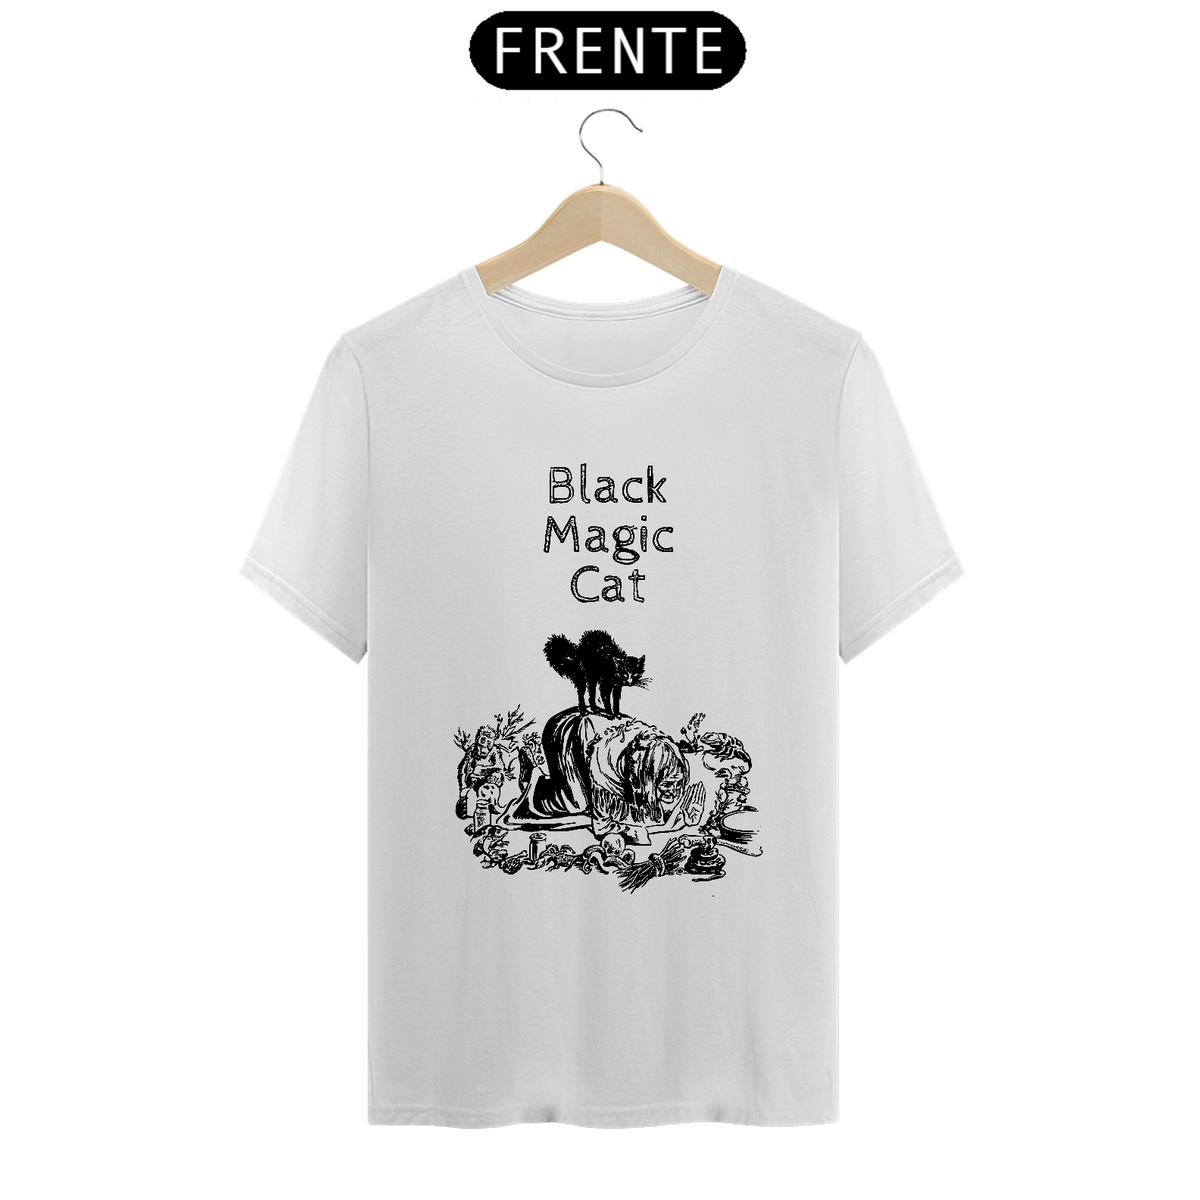 Nome do produto: Camiseta Black Magic Cat